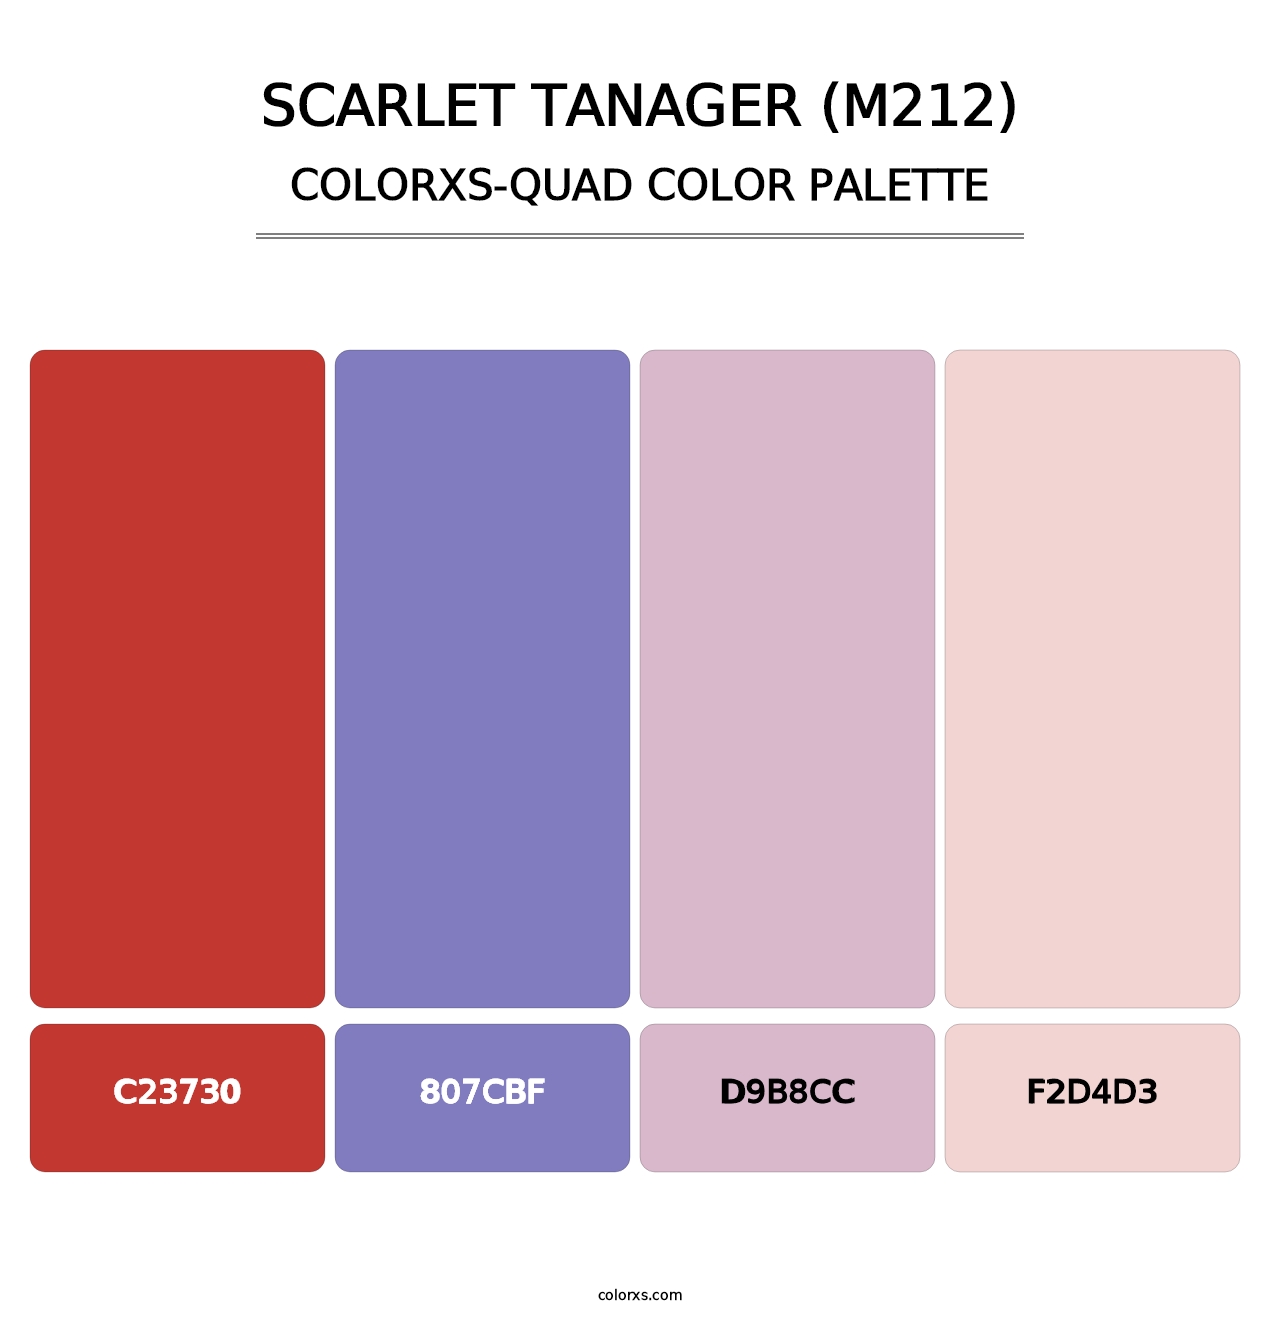 Scarlet Tanager (M212) - Colorxs Quad Palette